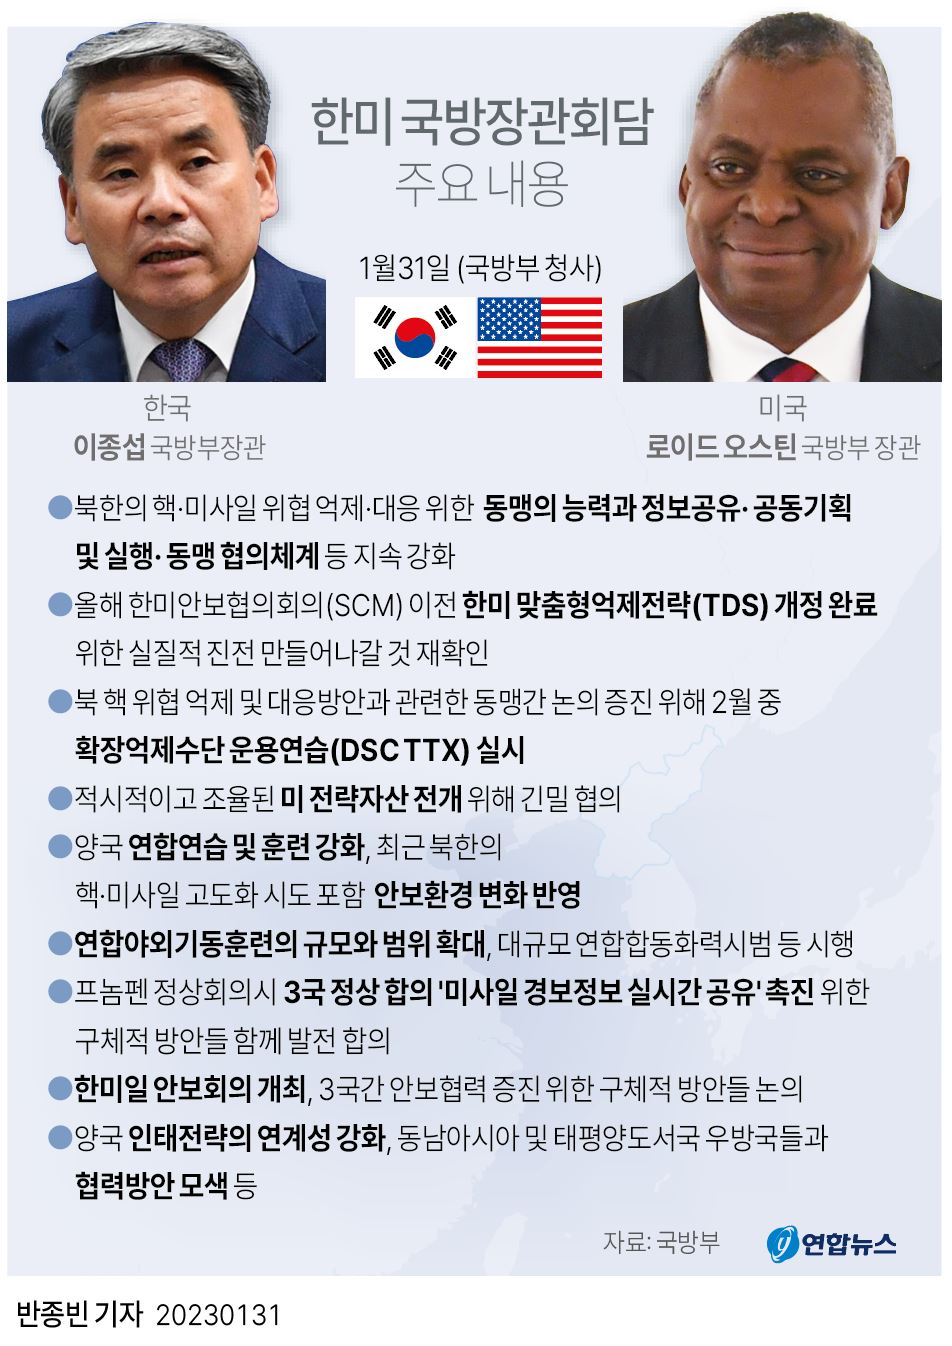  한미 국방장관회담 주요 내용